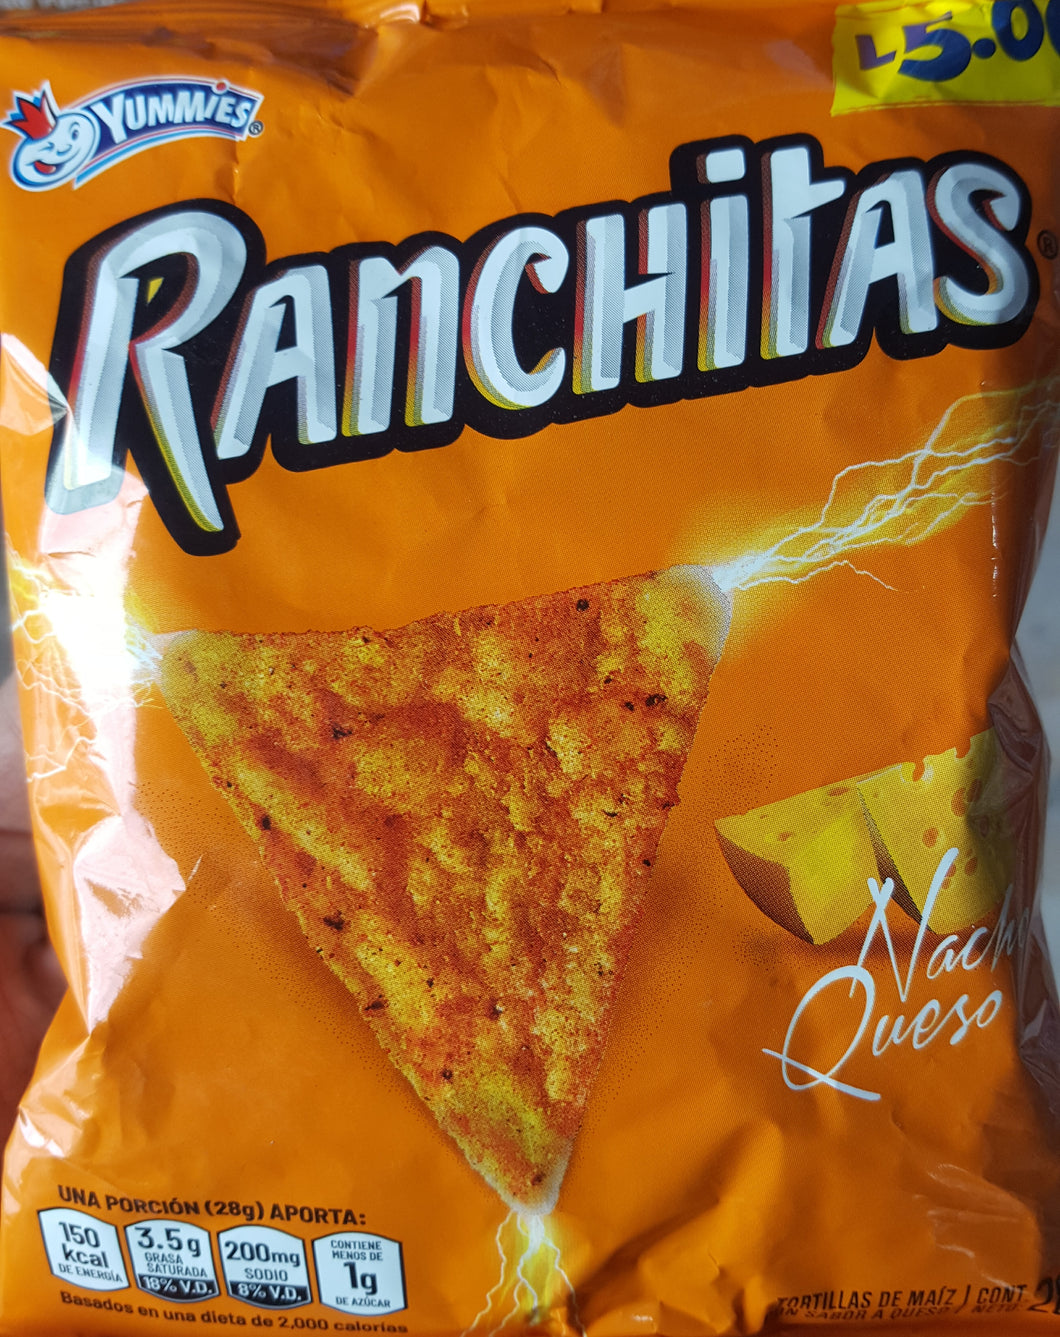 Ranchitas nacho queso 28g